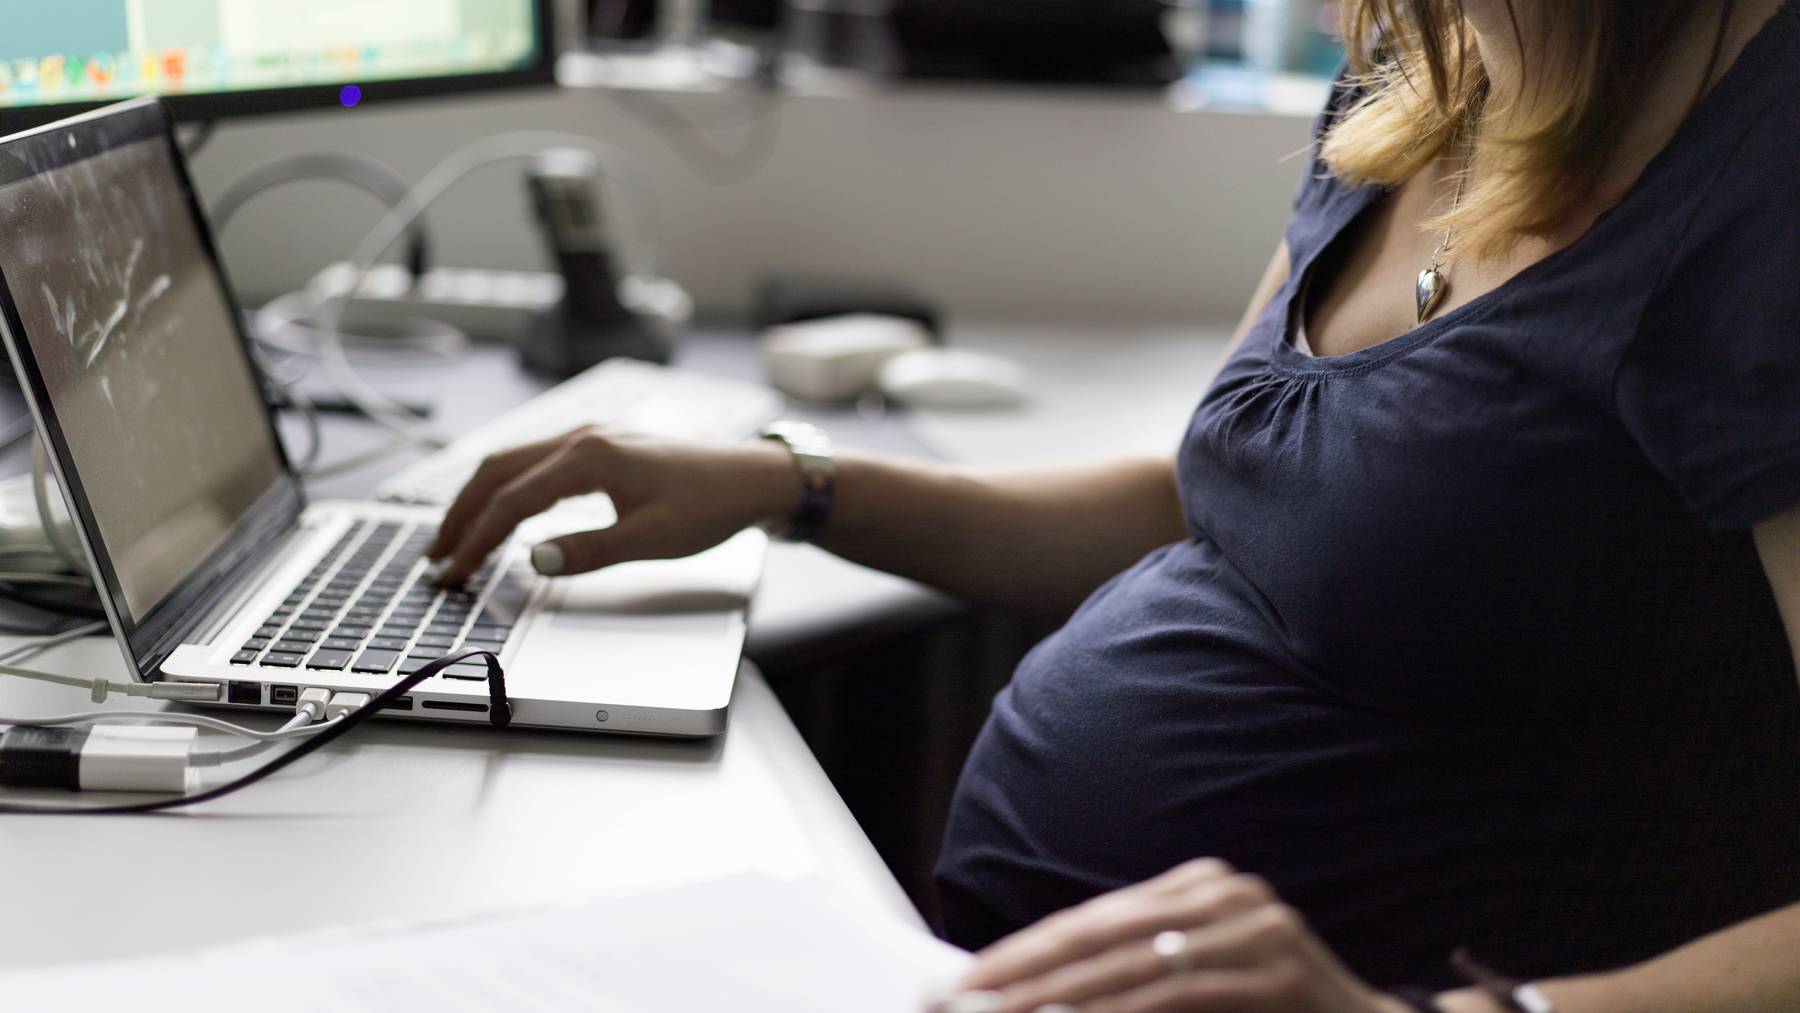 Schwangere Frauen sollen wenn möglich von zu Hause aus arbeiten dürfen.